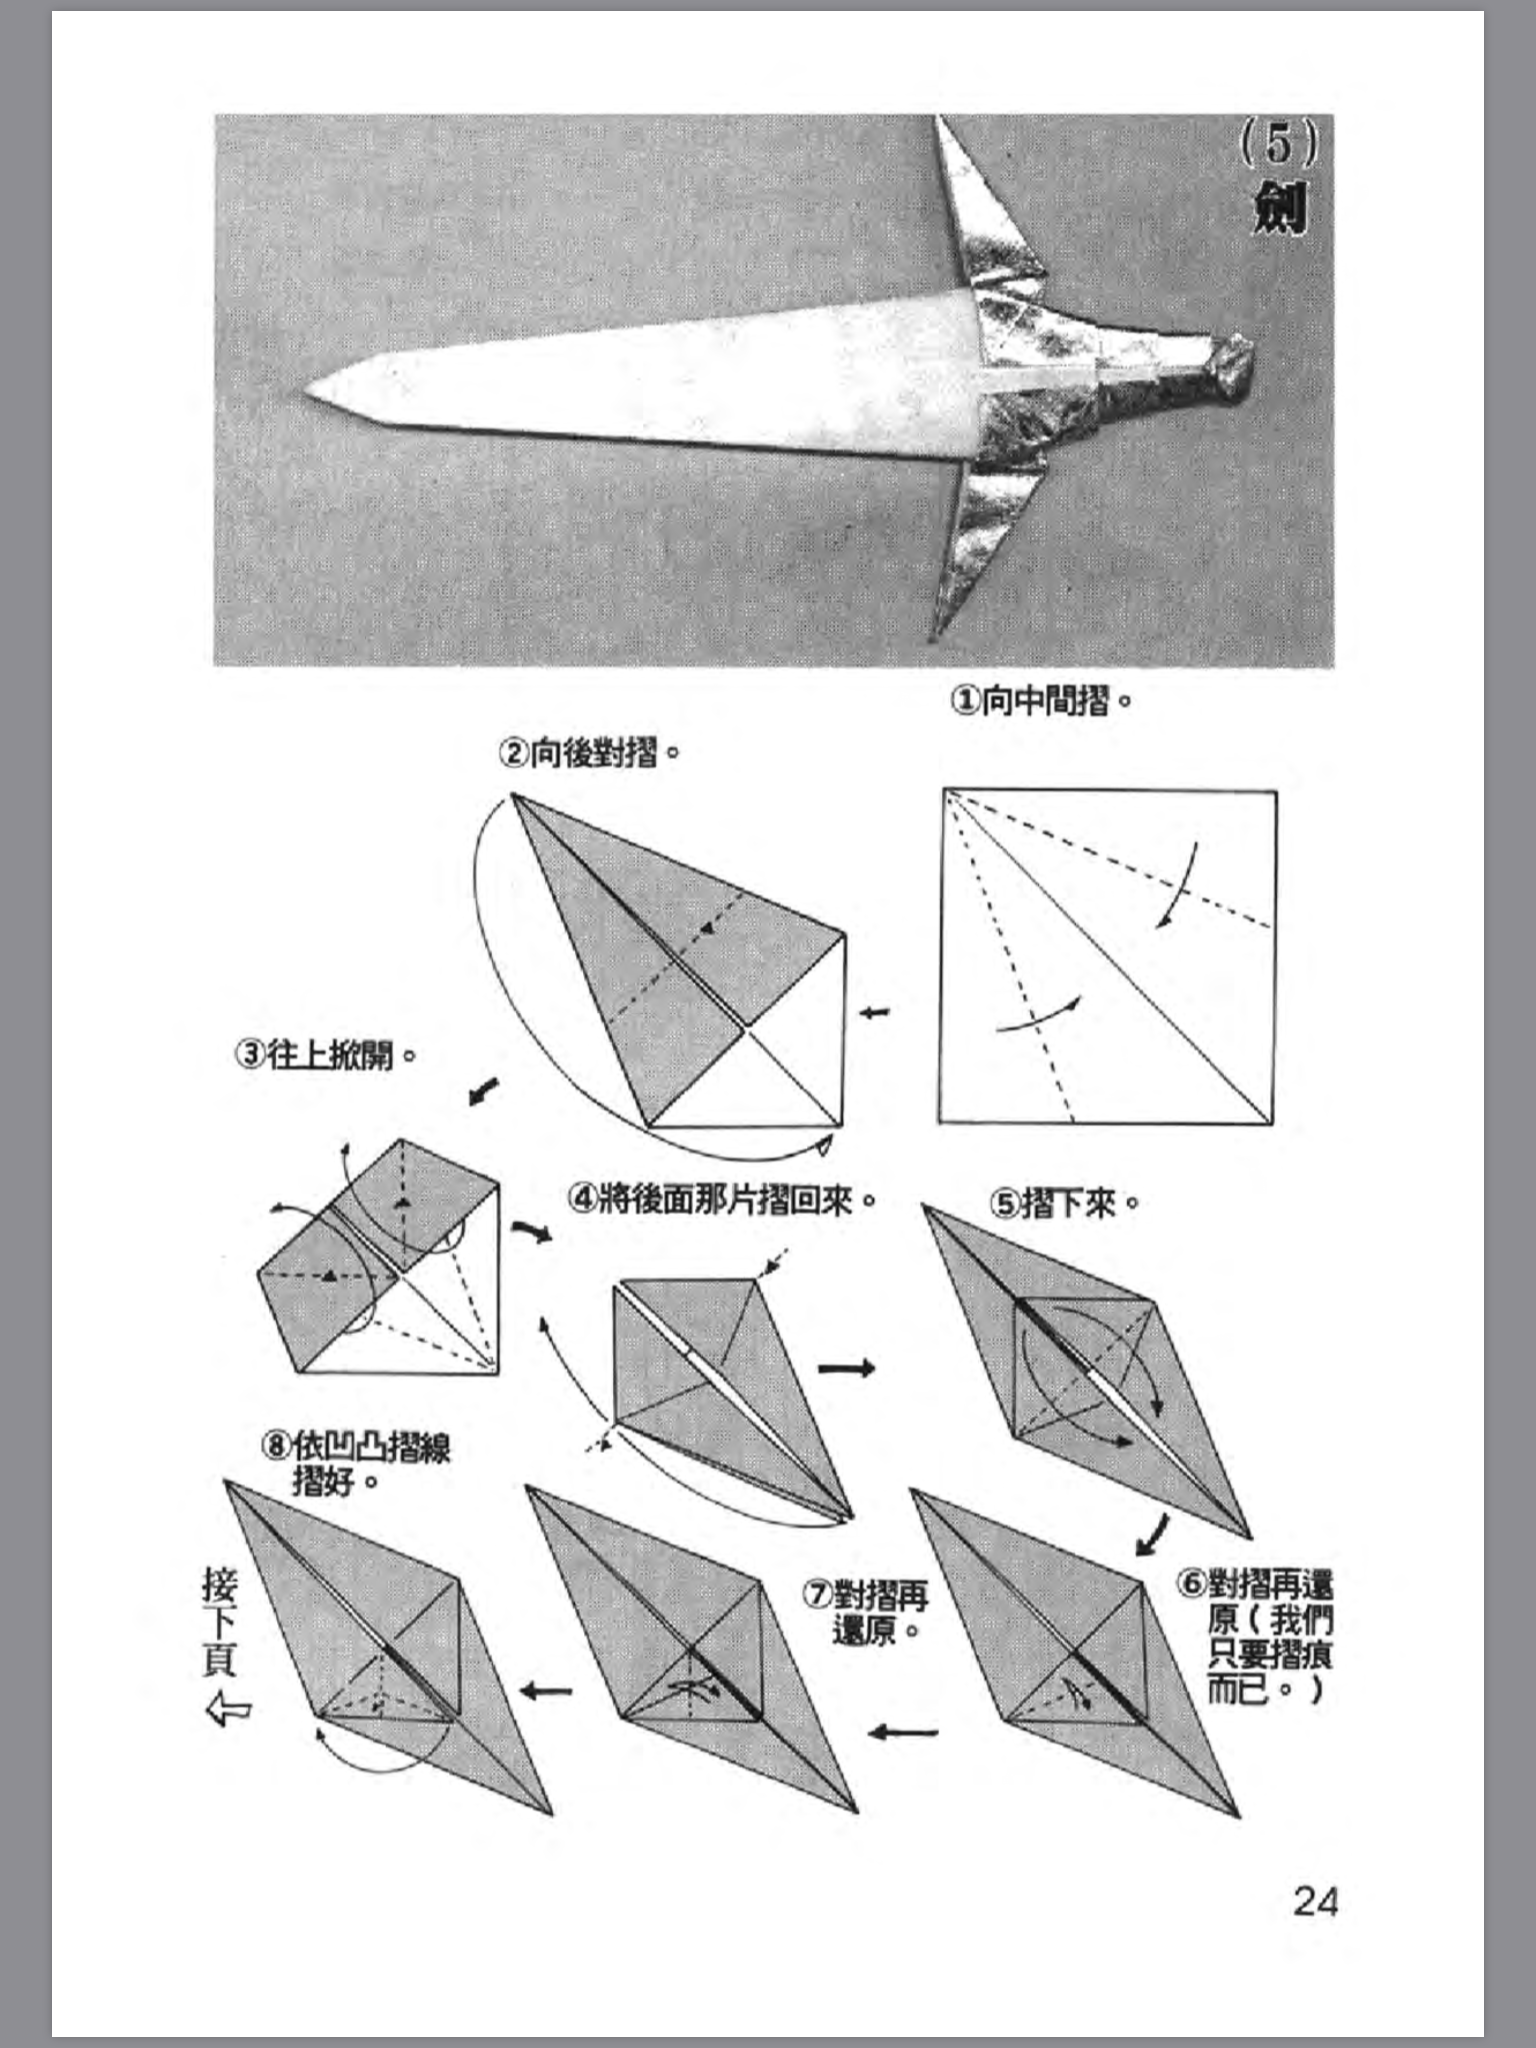 折纸战士之折纸宝典1分享(3)(机器人 剑 来福枪)